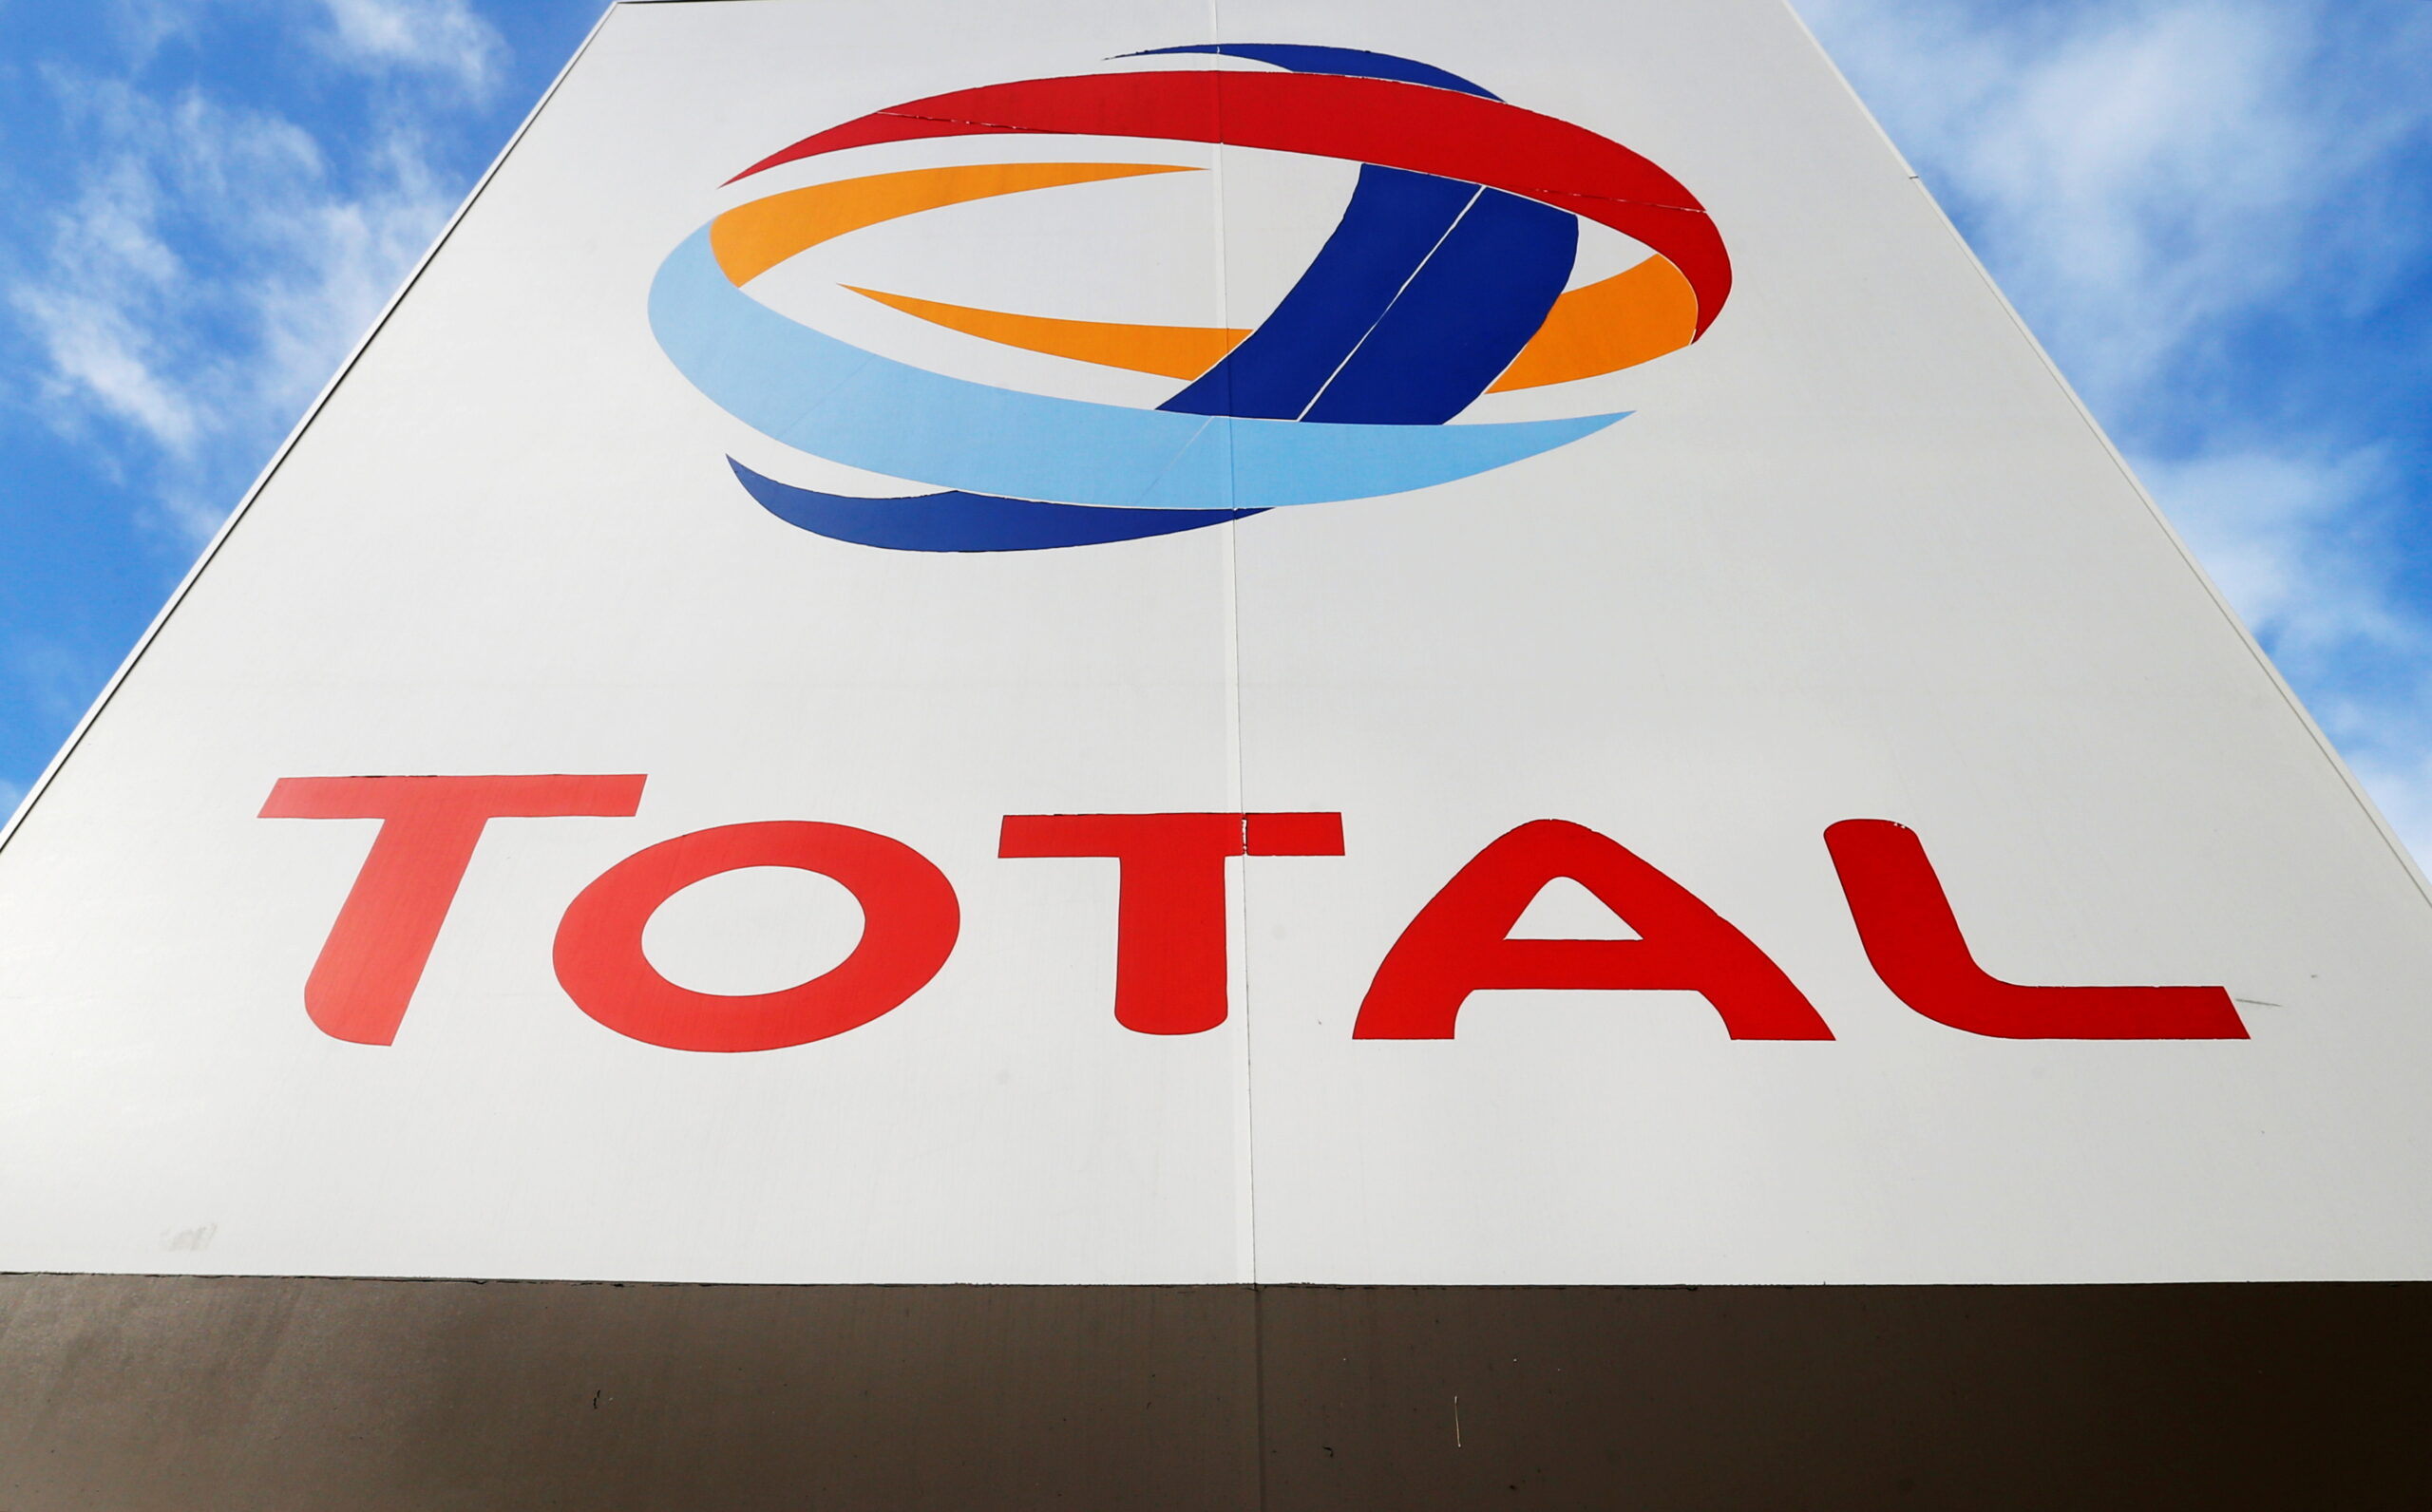 Total suspend son projet gazier au Mozambique pour cas de «force majeure»